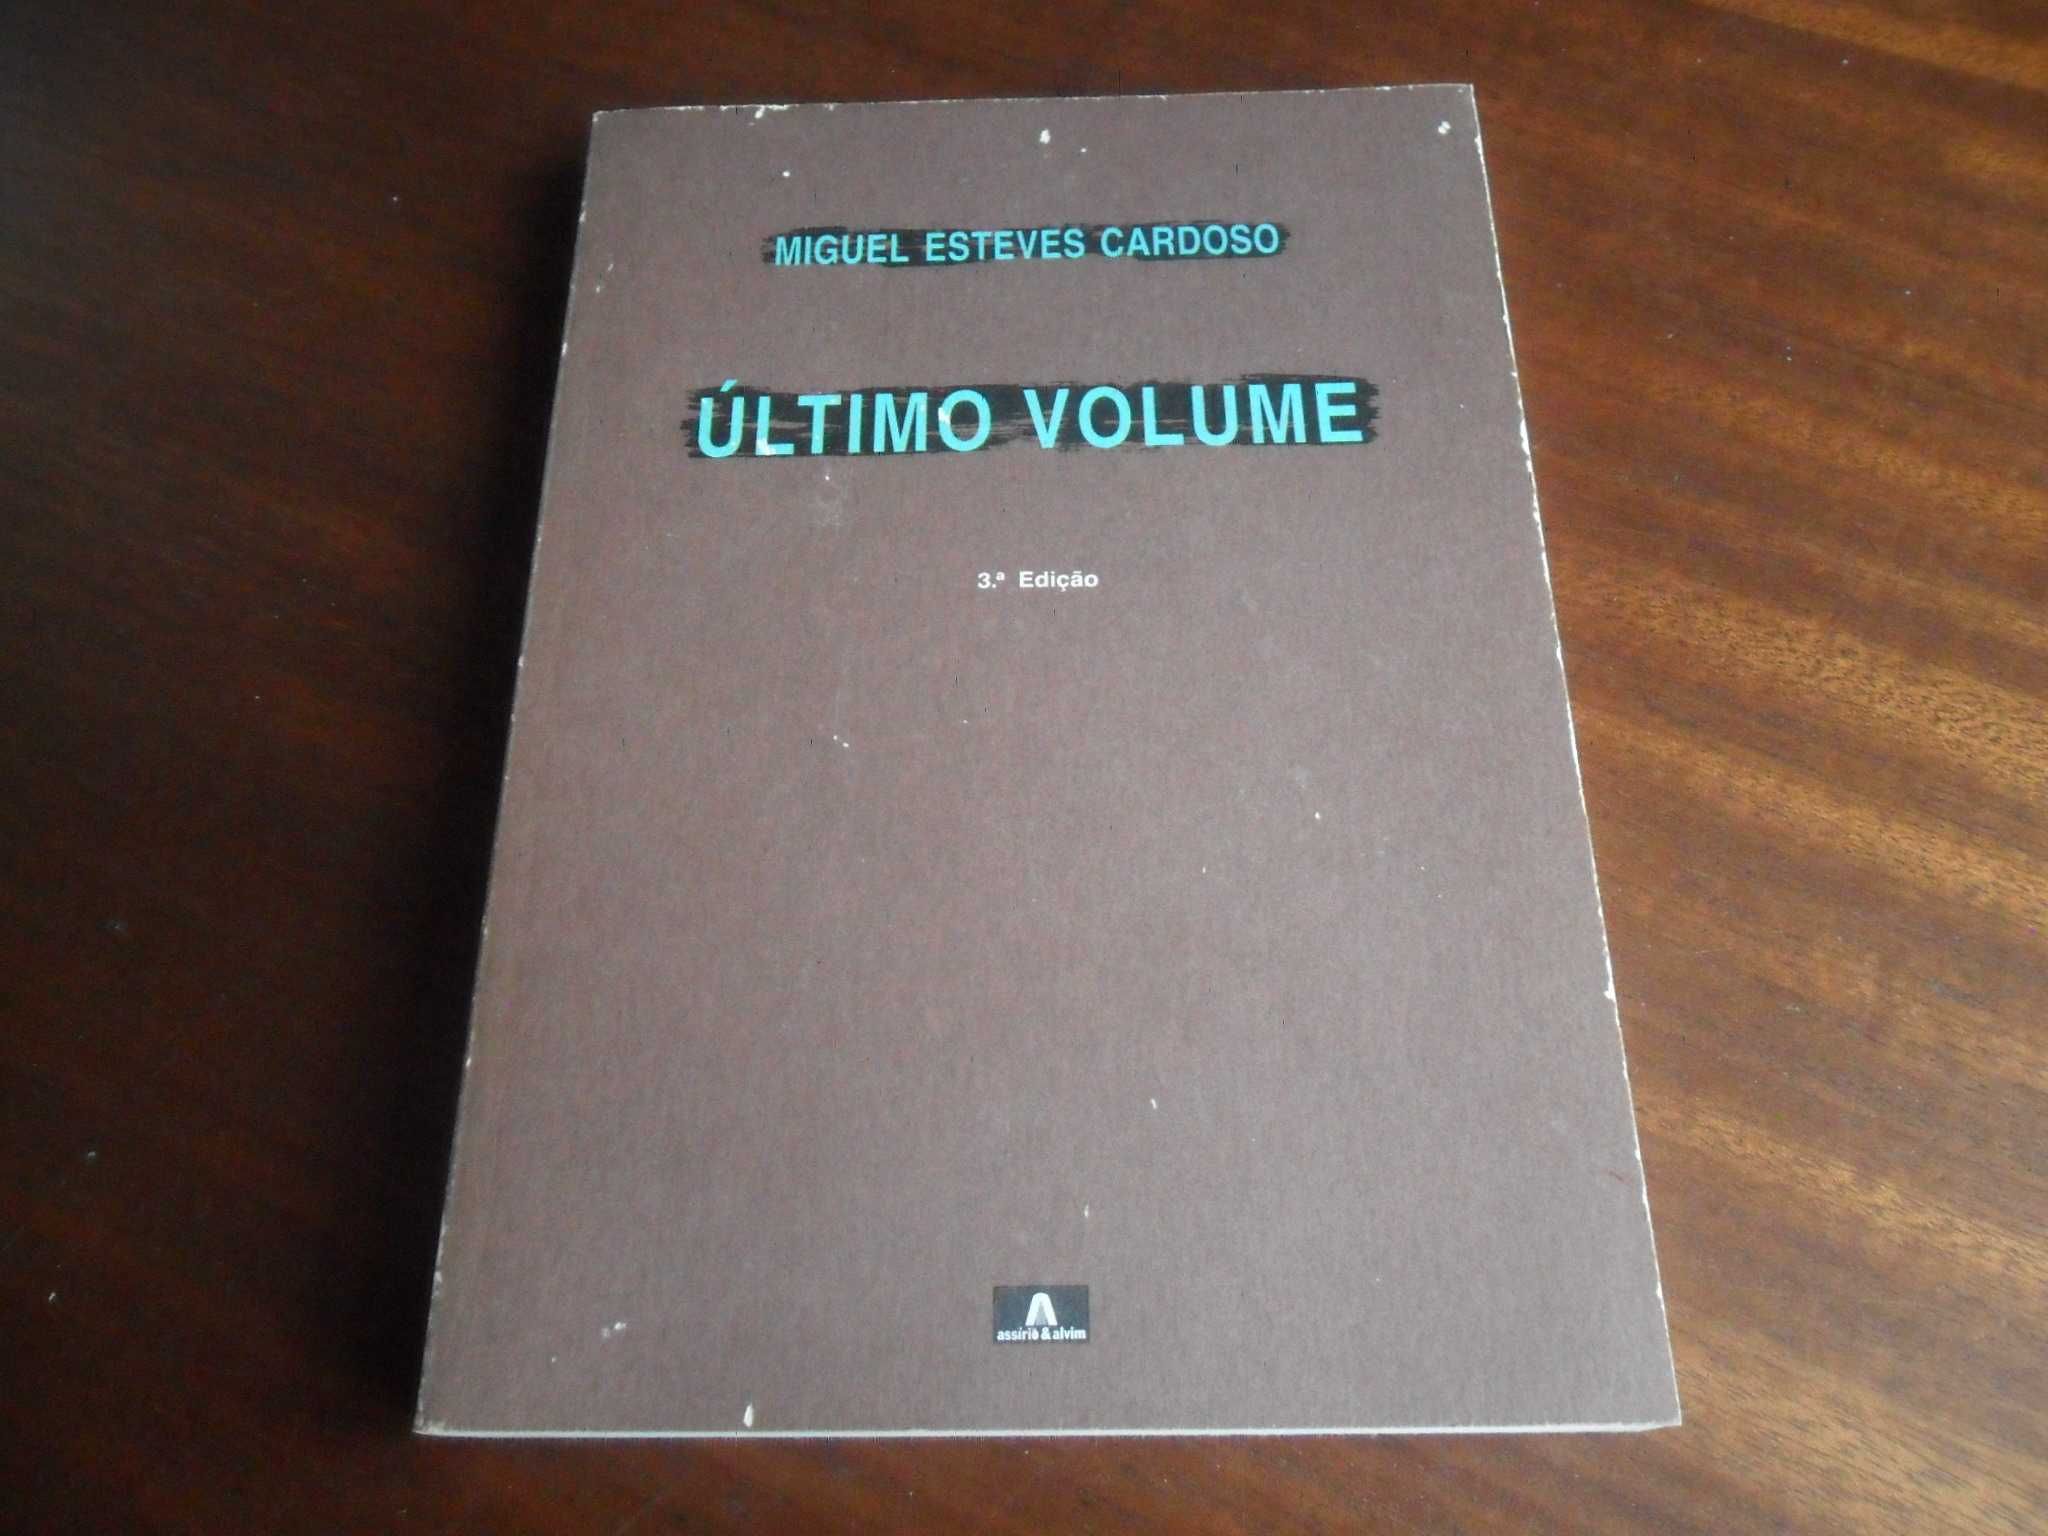 "Último Volume" de Miguel Esteves Cardoso - 3ª Edição de 1993